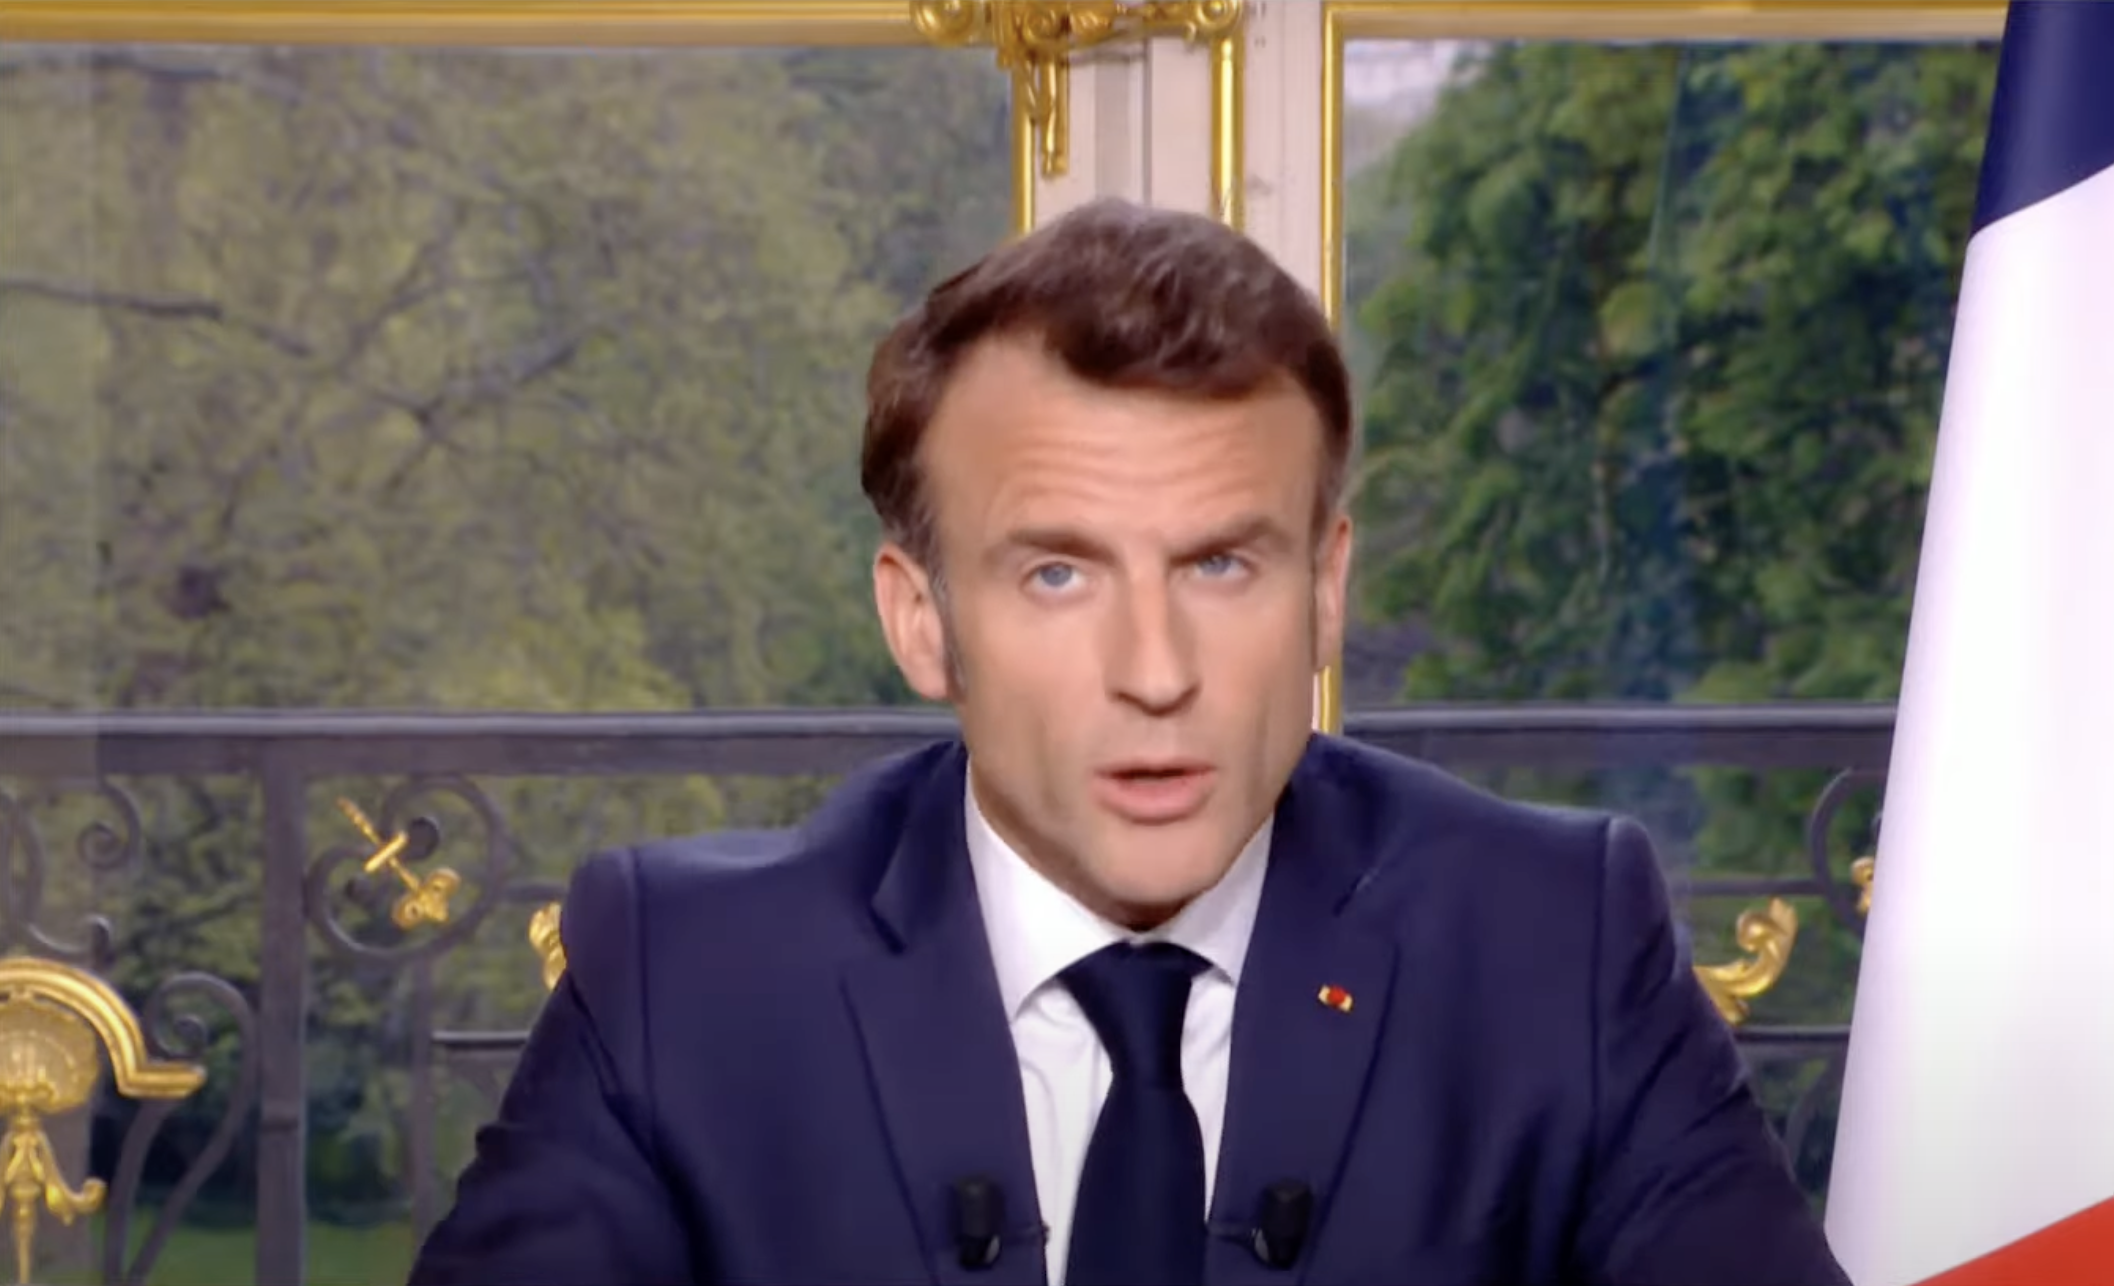     Travail, justice, mieux-vivre : les trois chantiers d’Emmanuel Macron

